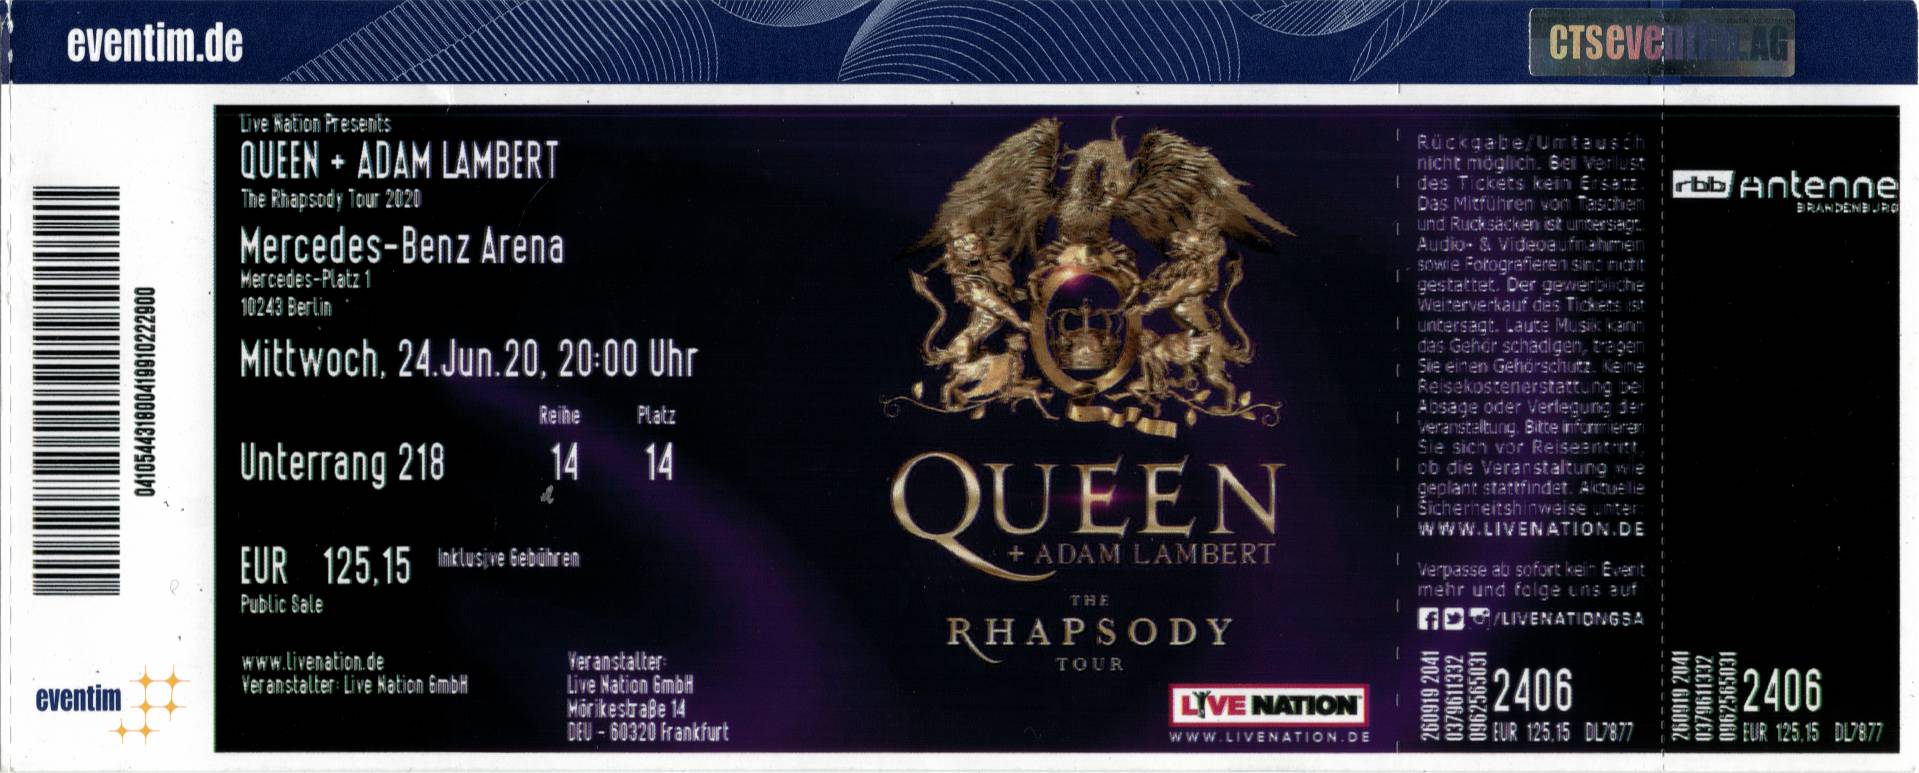 Ticket stub - Queen + Adam Lambert live at the Mercedes-Benz Arena, Berlin, Germany [24.06.2022]